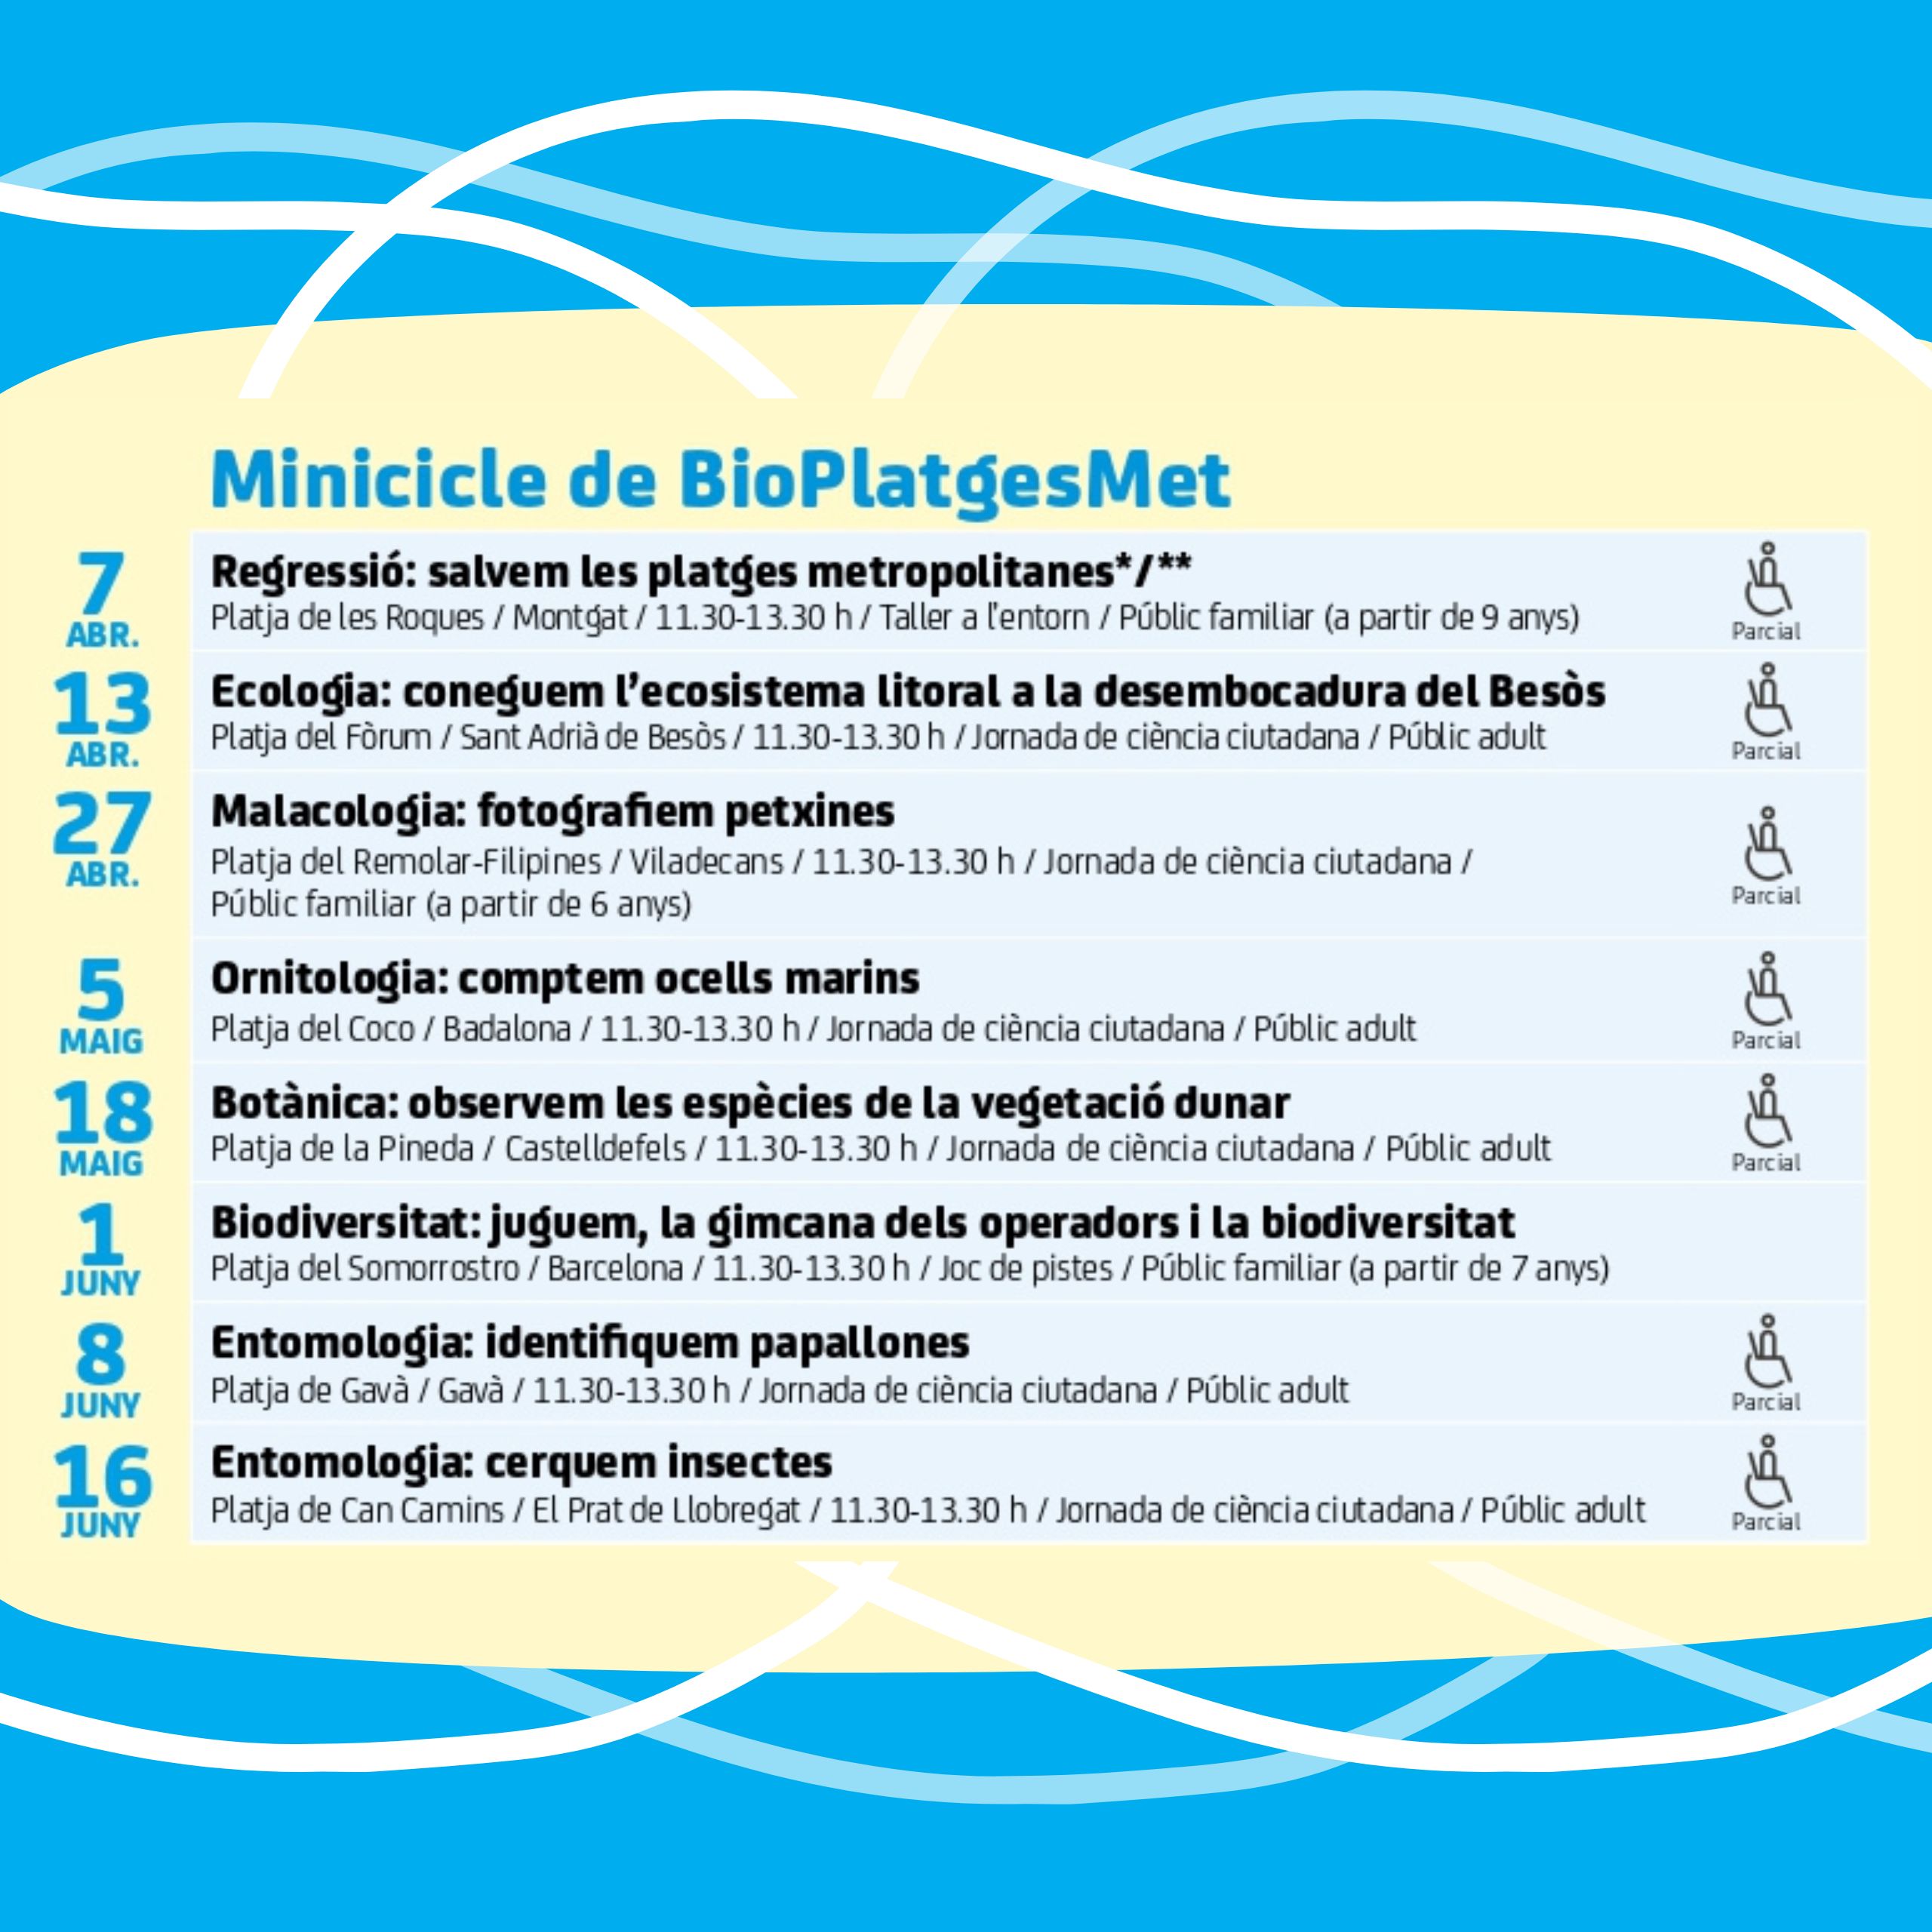 Comença el Minicicle de BioPlatgesMet